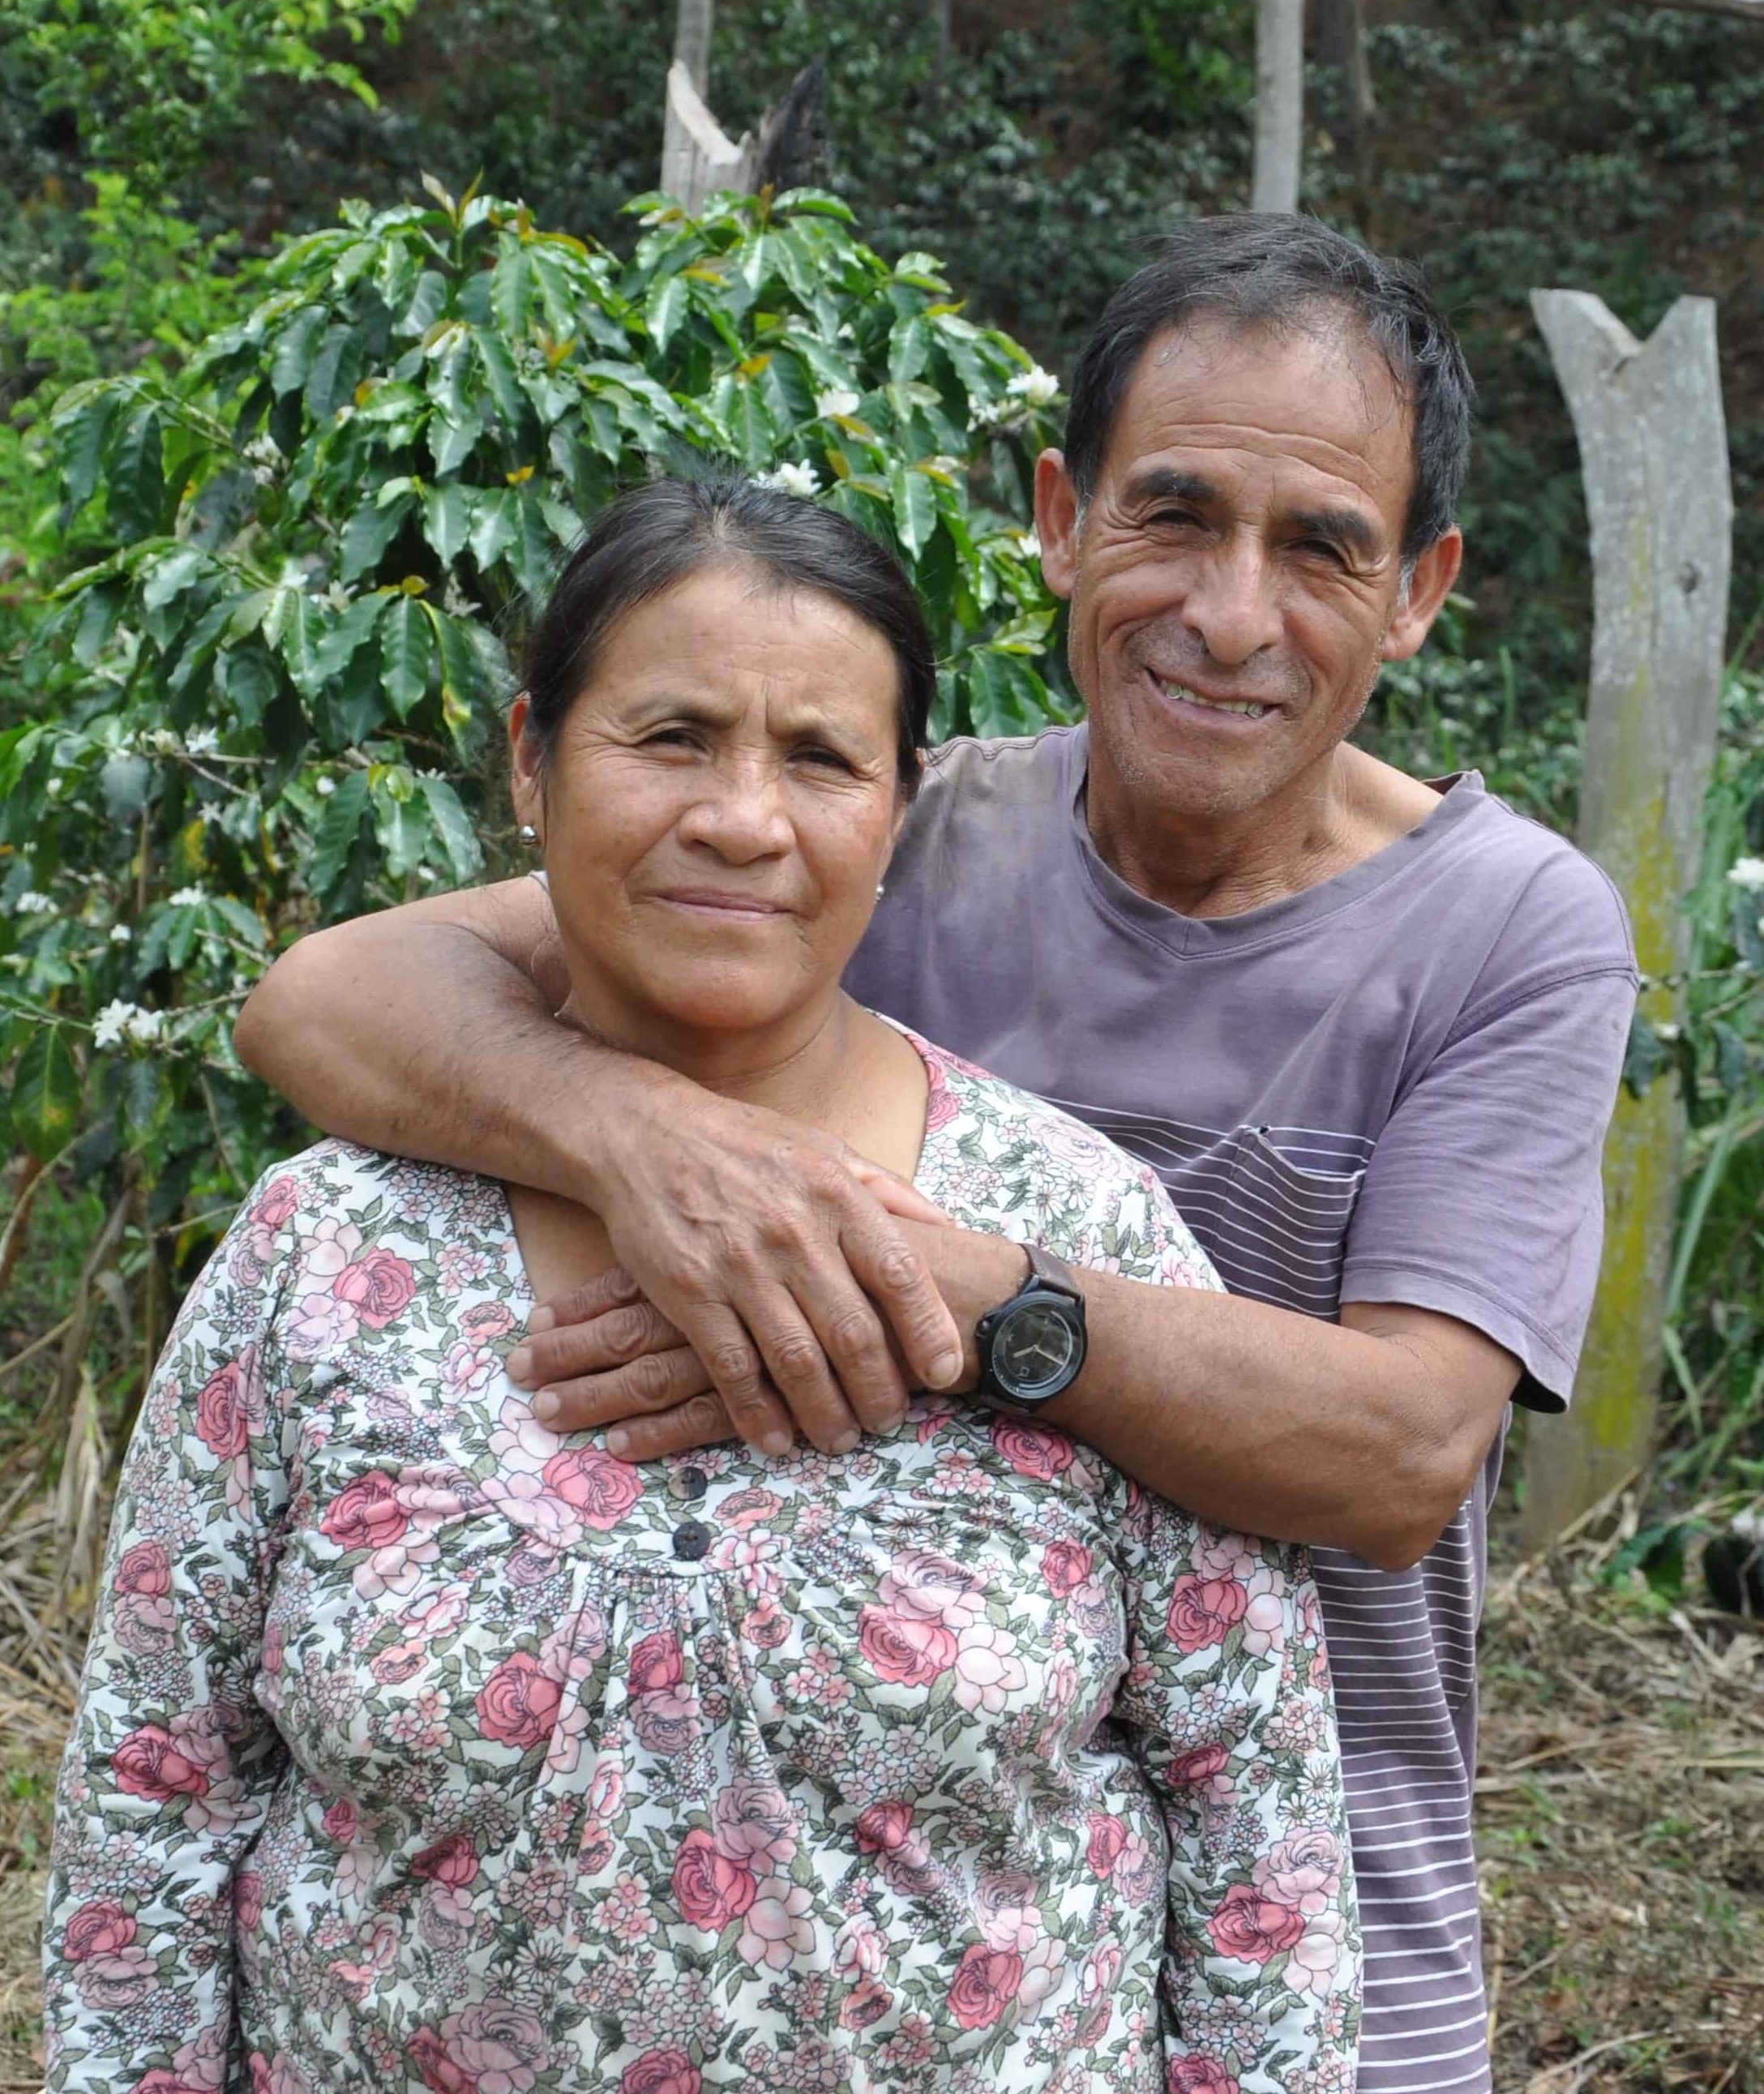 Raúl and Carmen Alanya Saramiento on their farm in San Martín de Pangoa